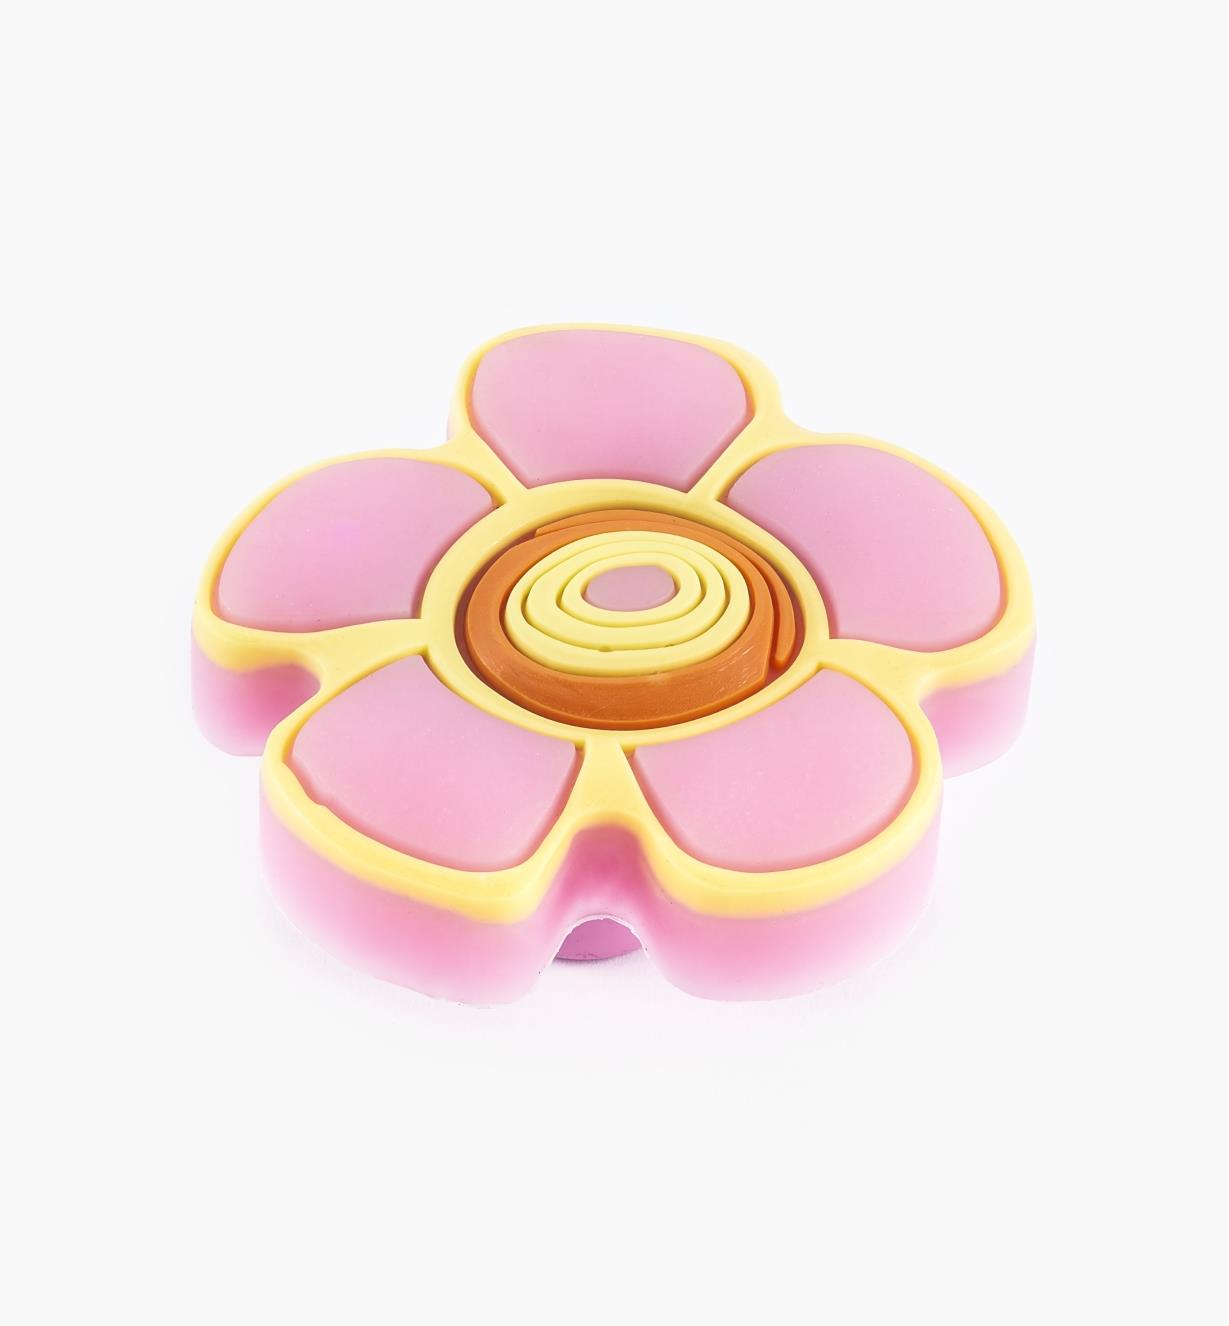 00W5616 - Bouton fleur rose